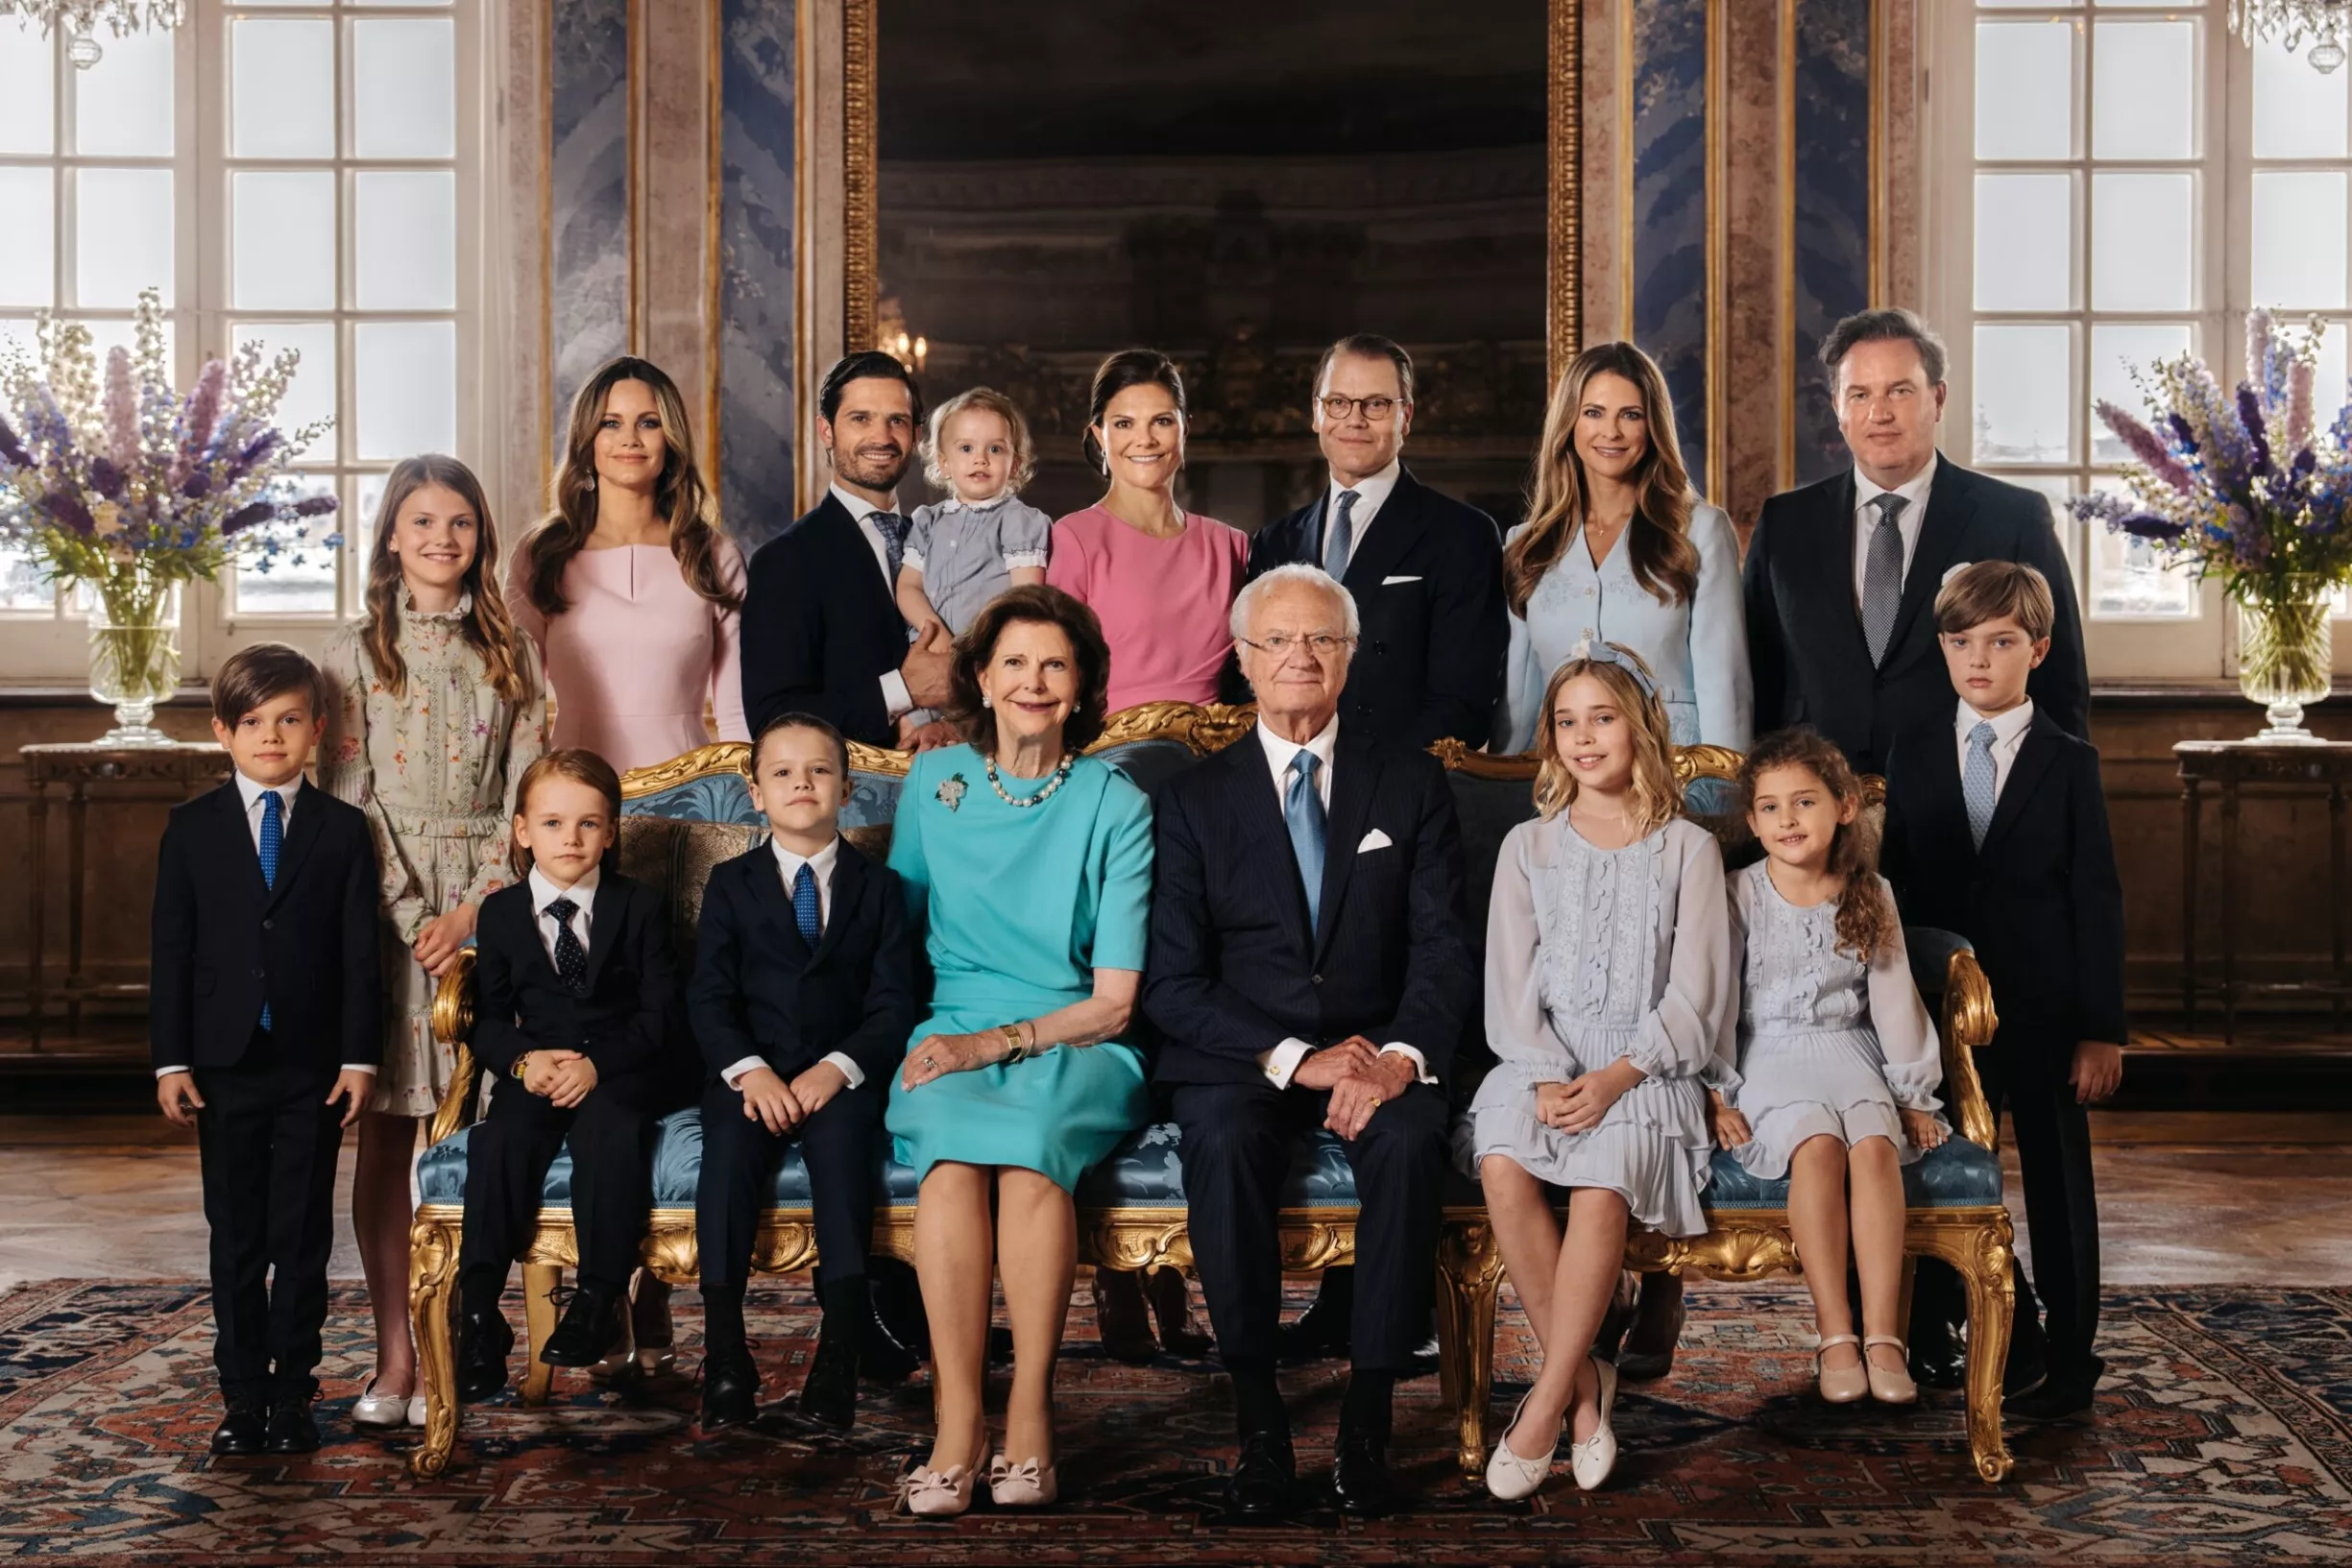 Kuningatar Silvia täyttää 80 vuotta. Ympärillä on nyt suuri perhe: kolme lasta puolisoineen ja kahdeksan lastenlasta.